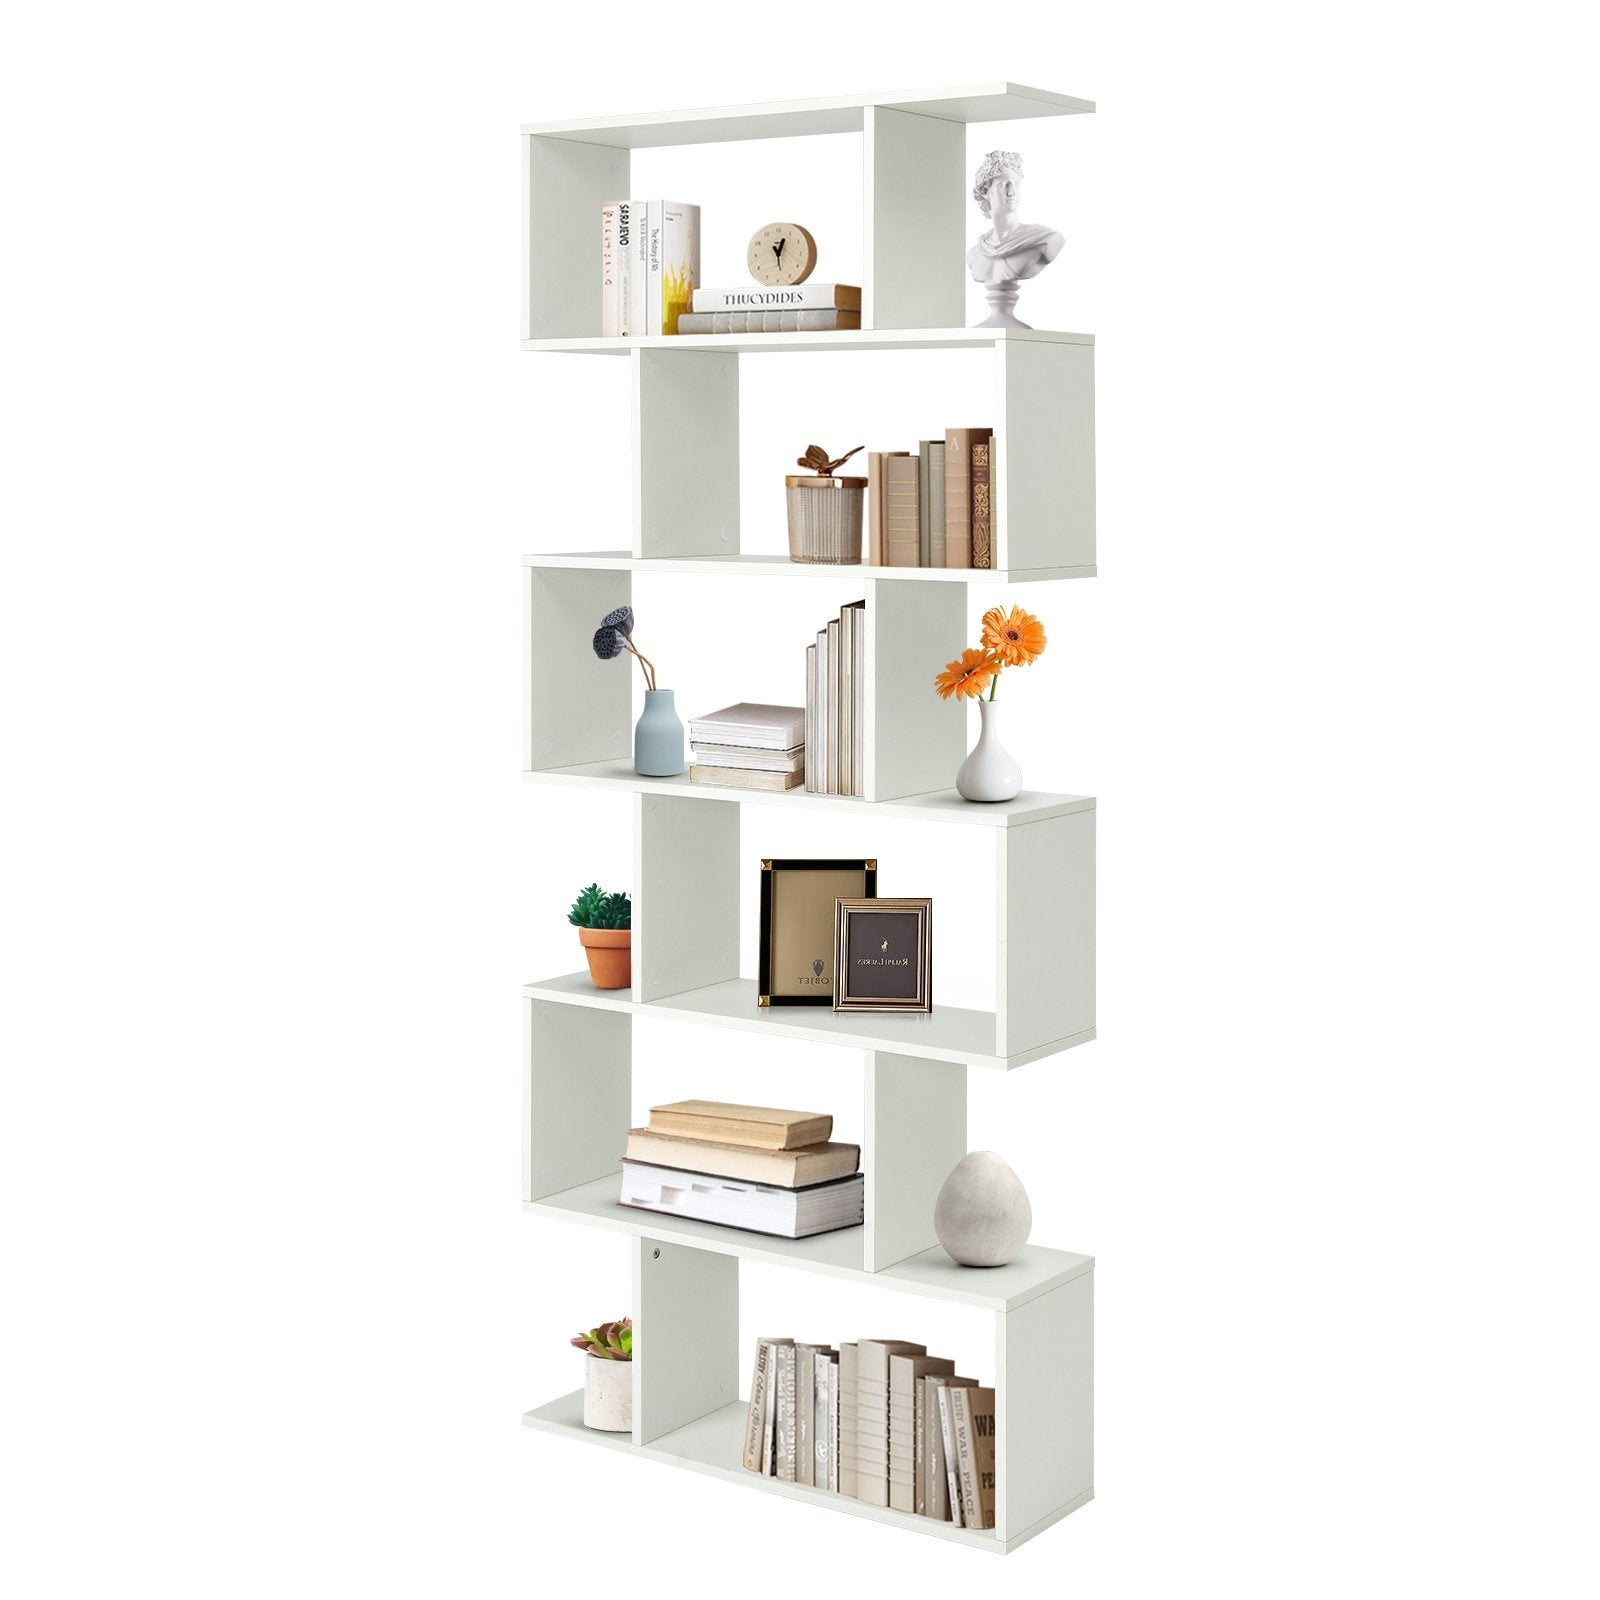 6 Tier S-Shaped Bookshelf Storage Display Bookcase Decor Z-Shelf, White - Gallery Canada